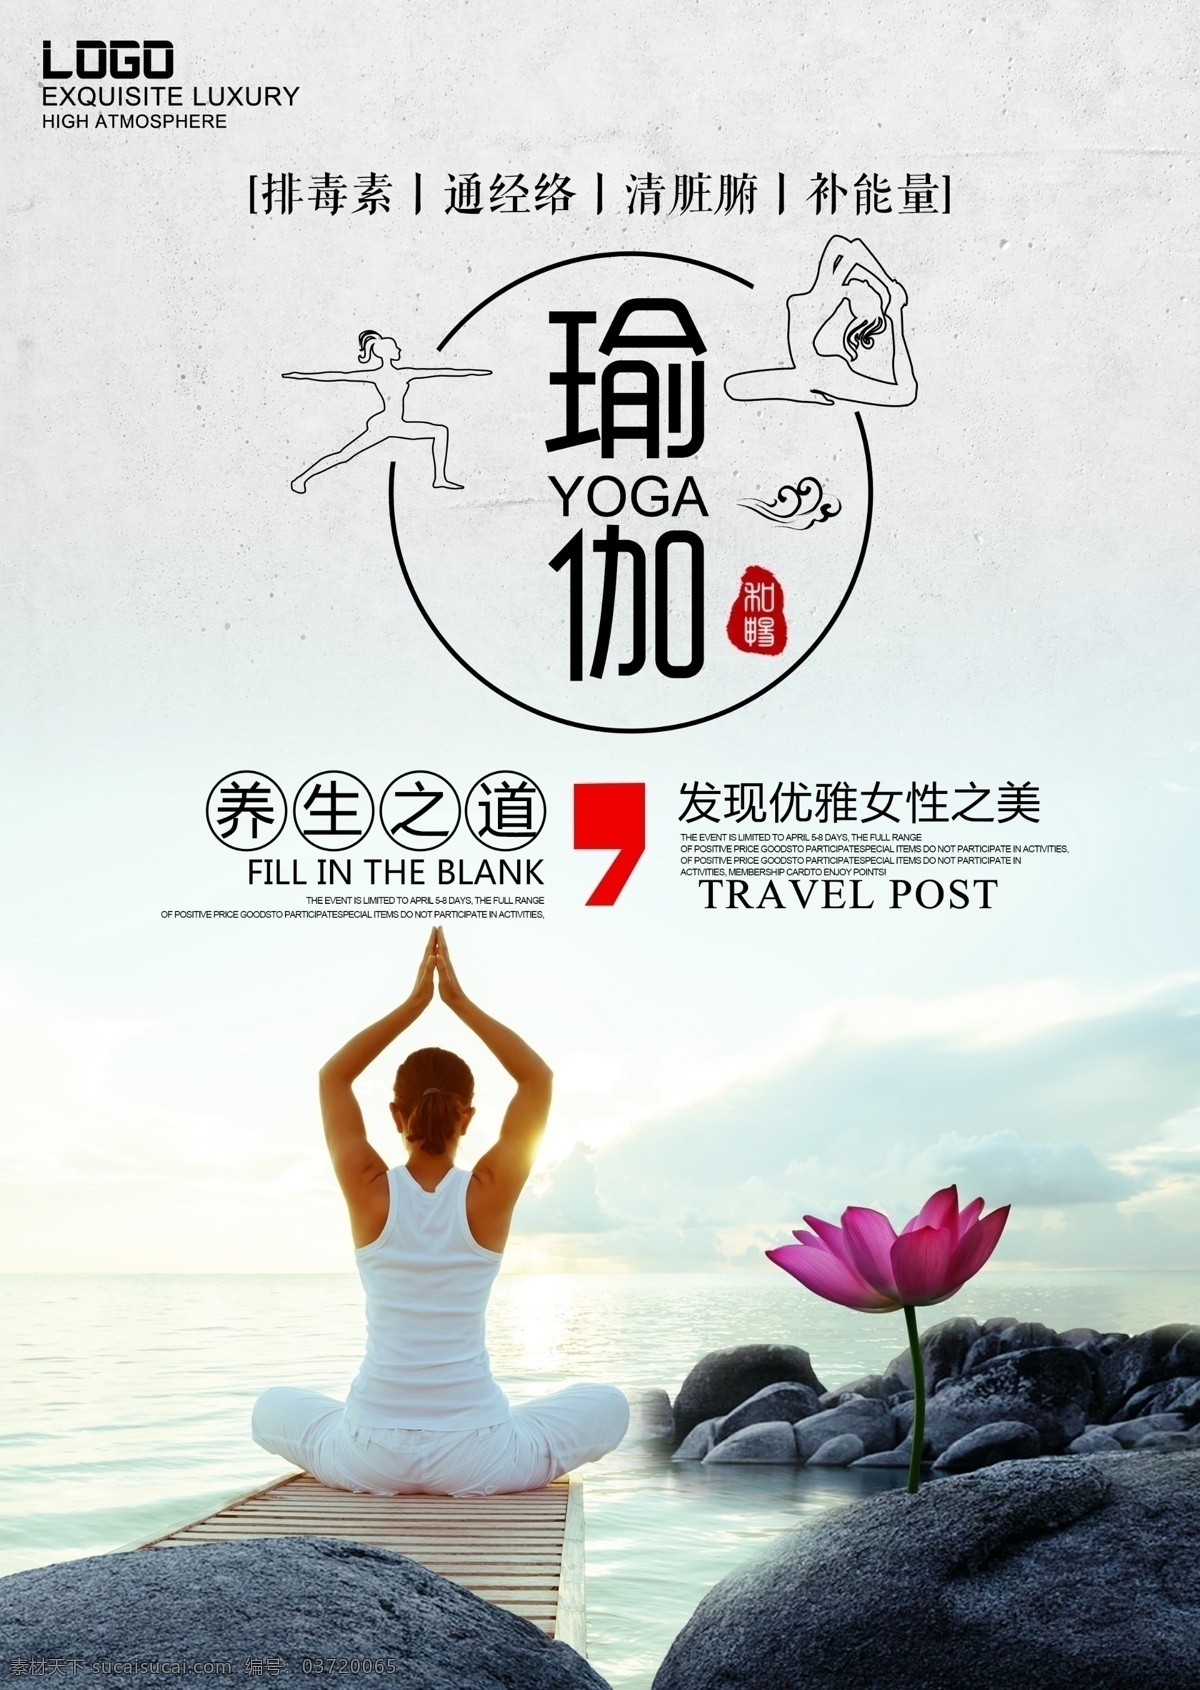 瑜伽宣传海报 瑜伽培训班 招生展板 瑜伽海报模板 大海 莲花 石头 黑色石头 瑜伽海报 做瑜伽 修行 修身养性